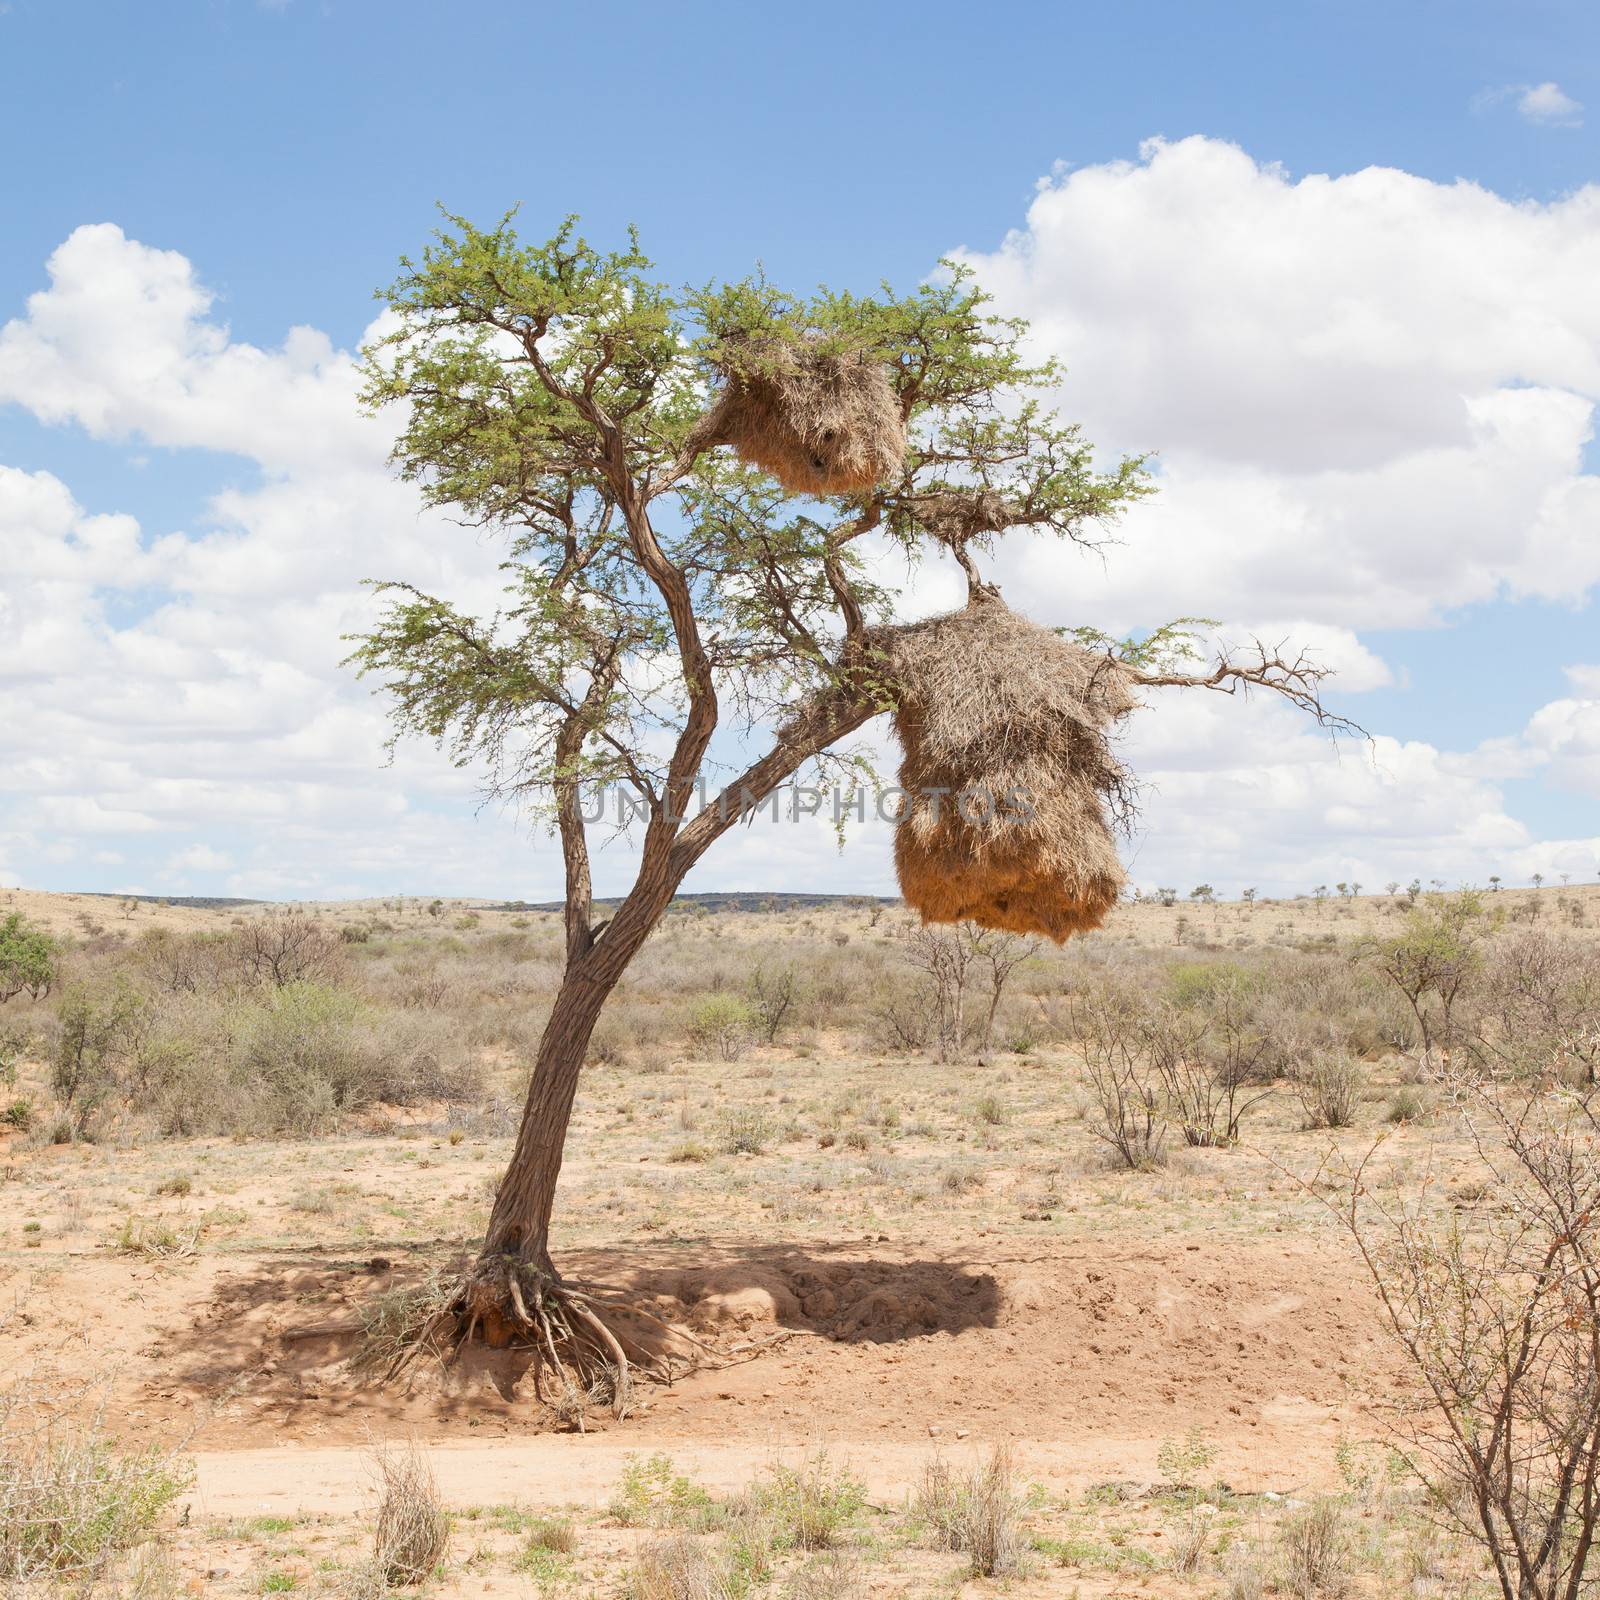 Weaver bird nest in the Namib desert, Namibia, Africa